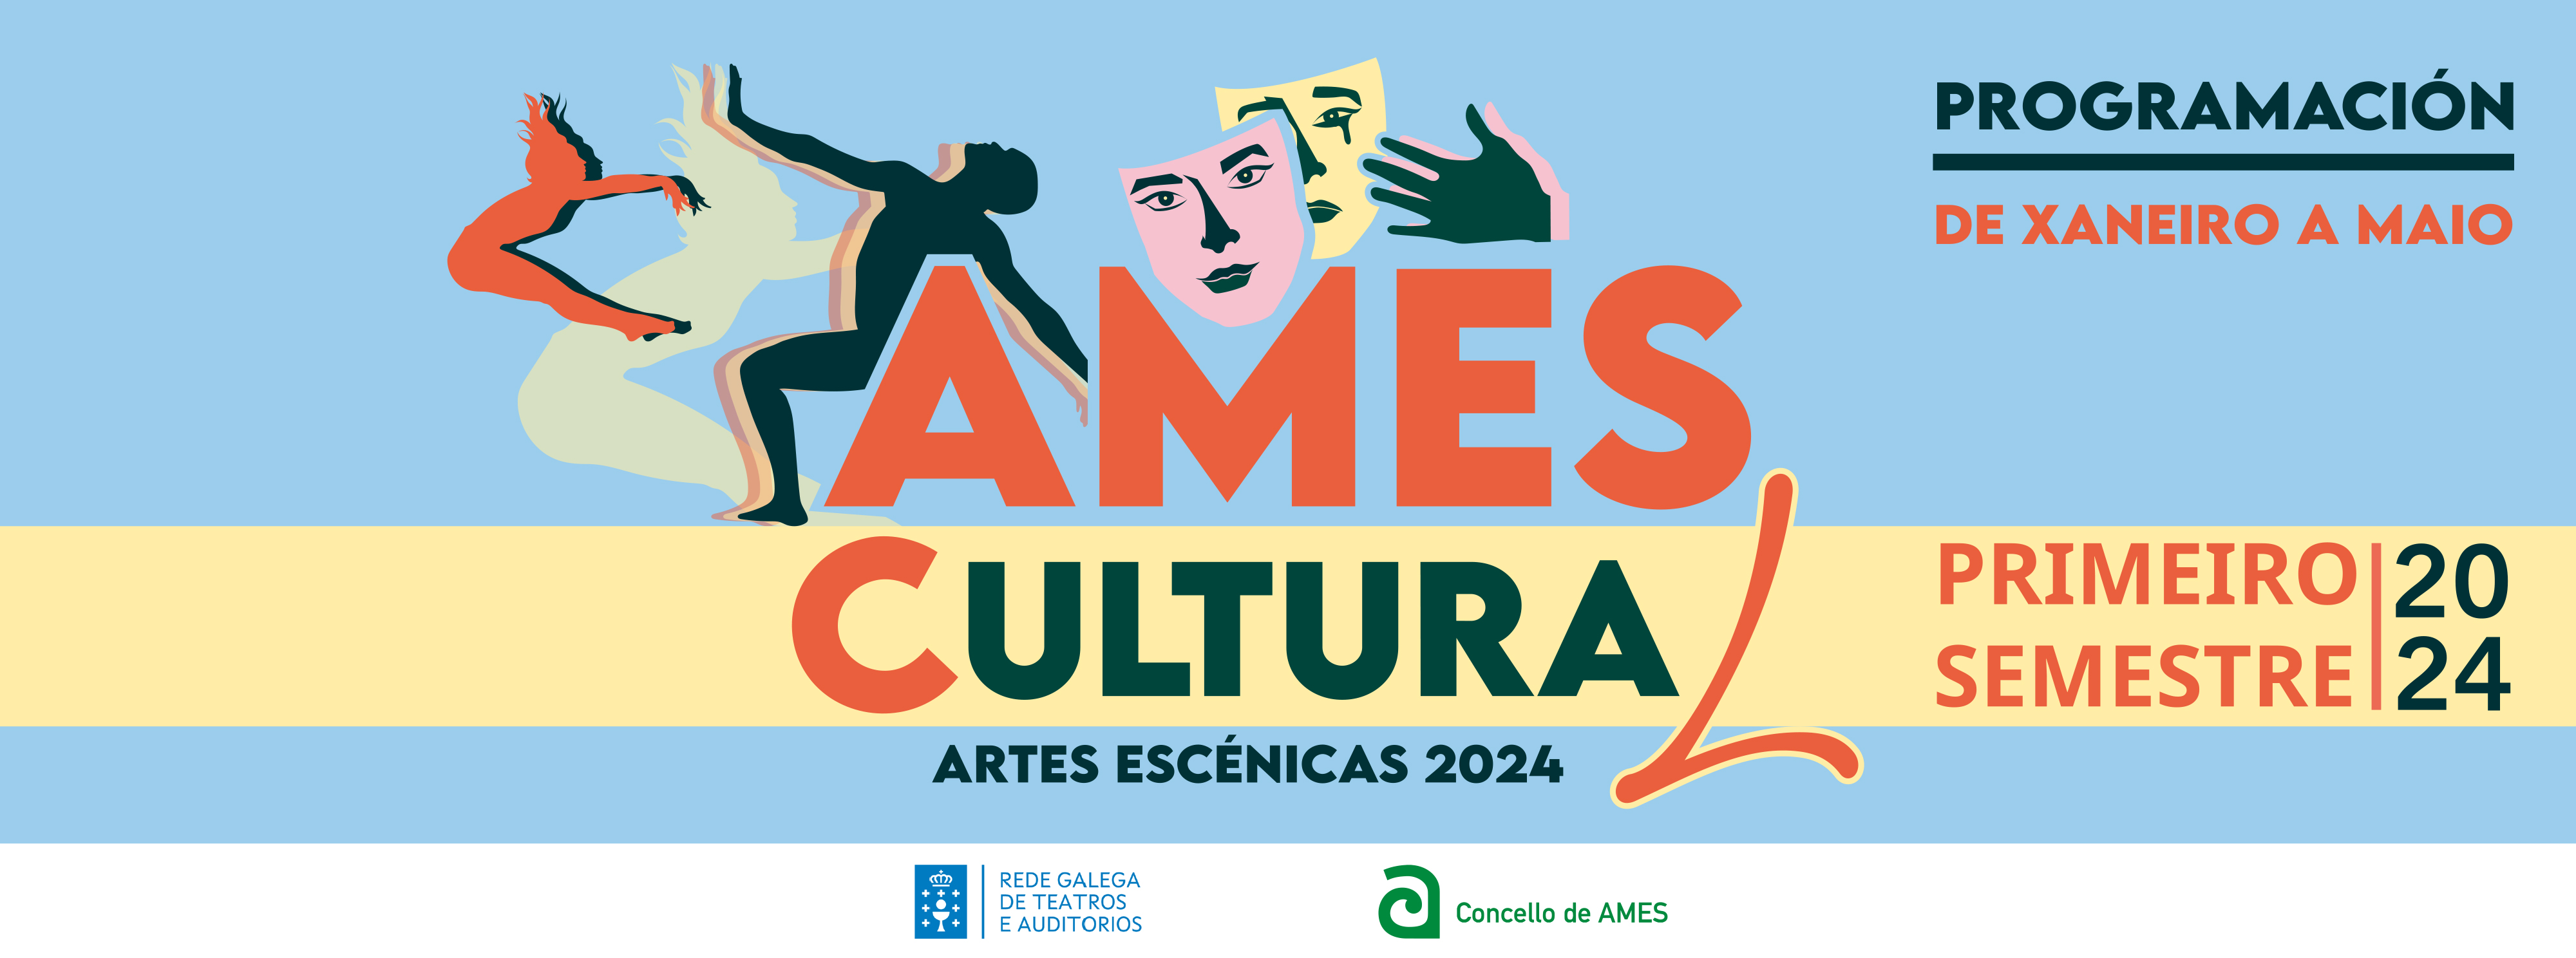 programación Ames Cultural 2024